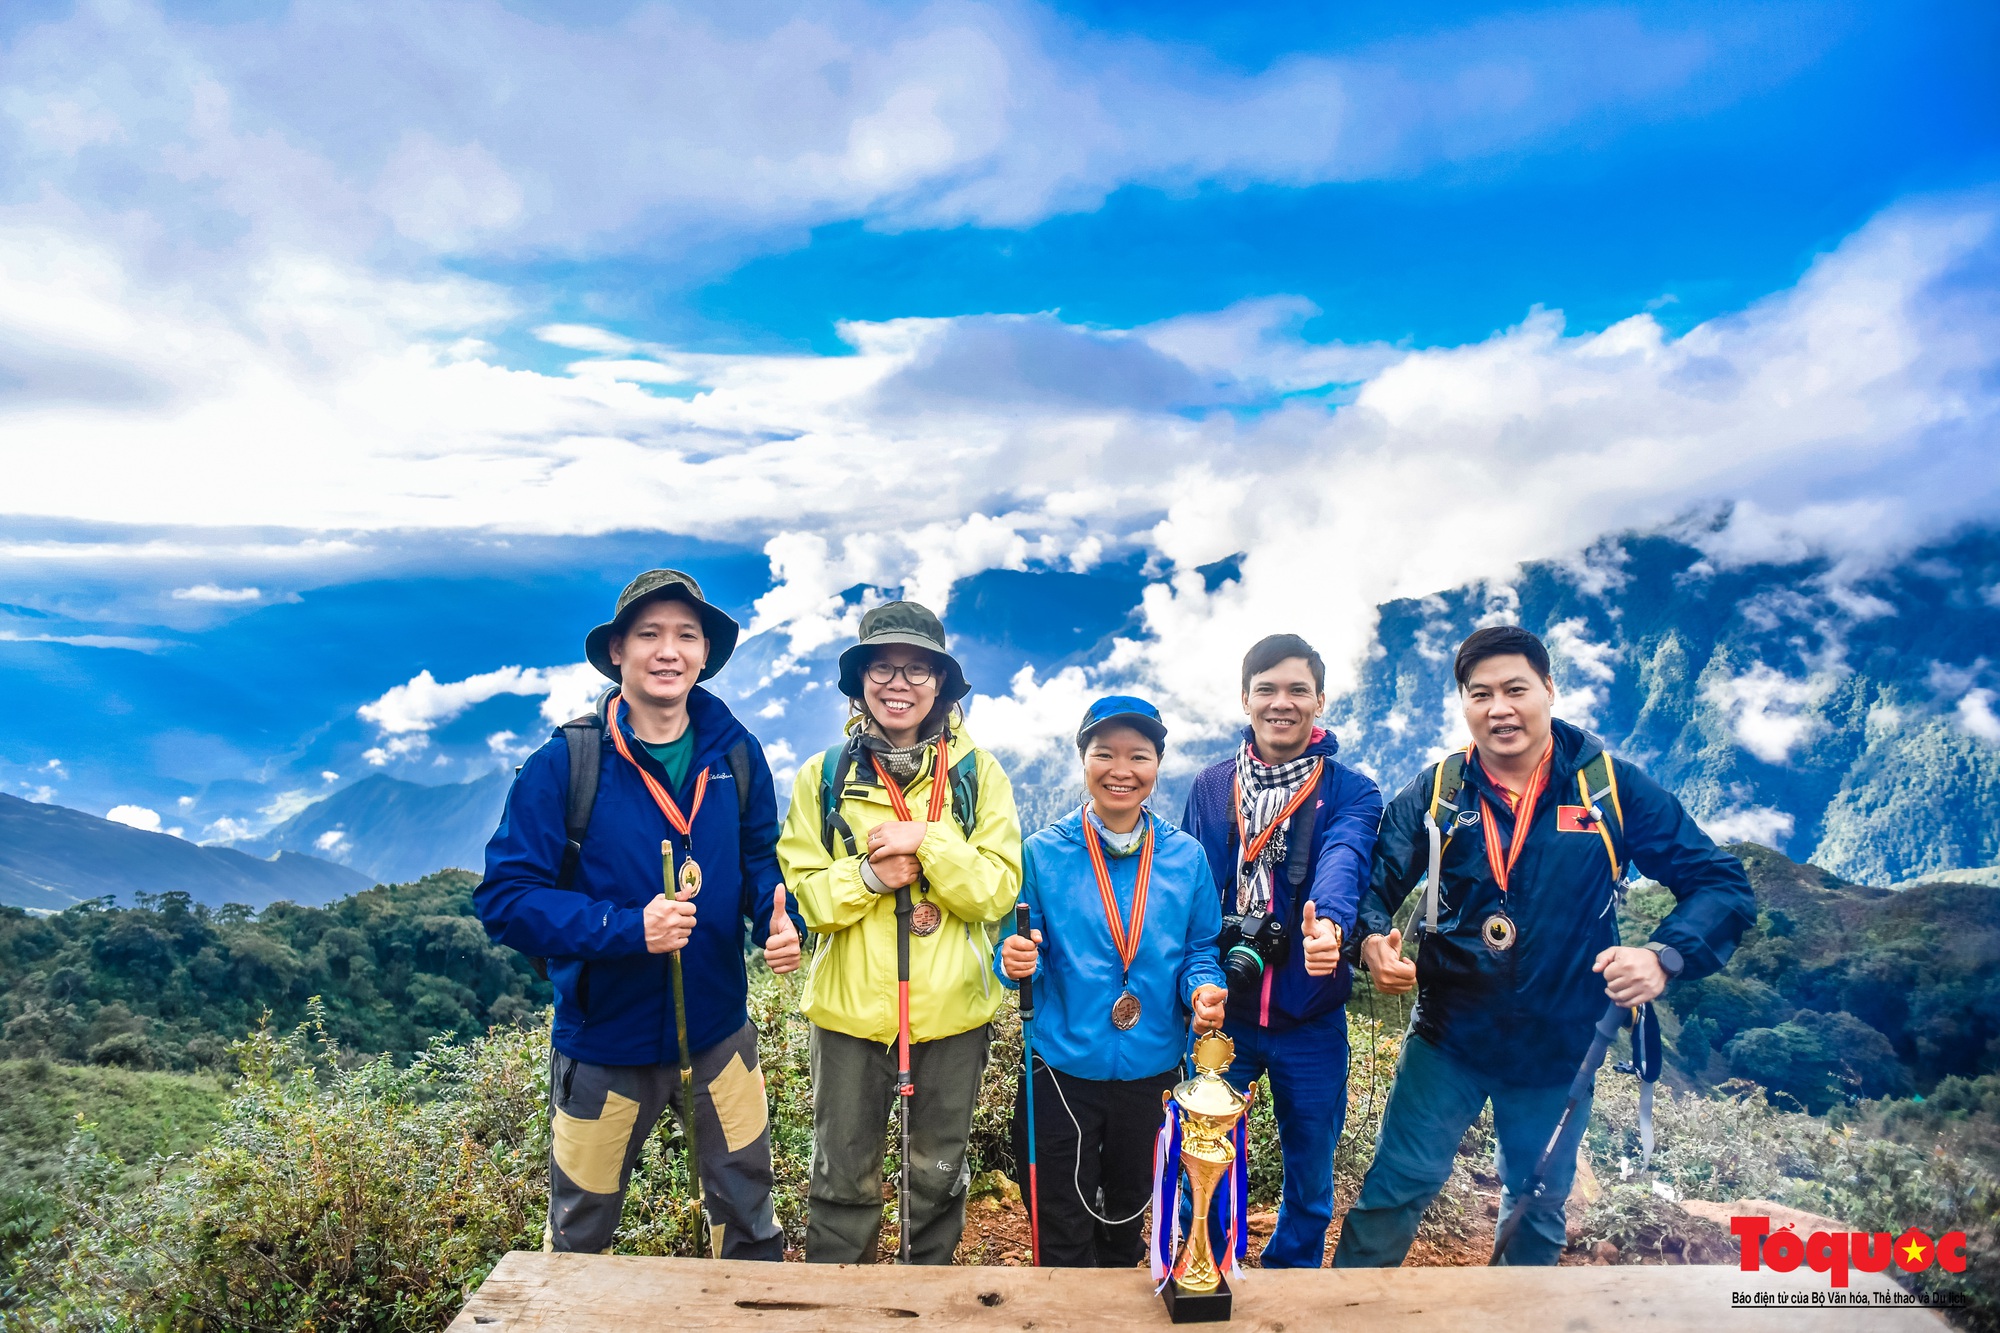 Hơn 100 nhà báo, phóng viên chinh phục đỉnh Tà Chì Nhù ở độ cao 2927m - Ảnh 17.